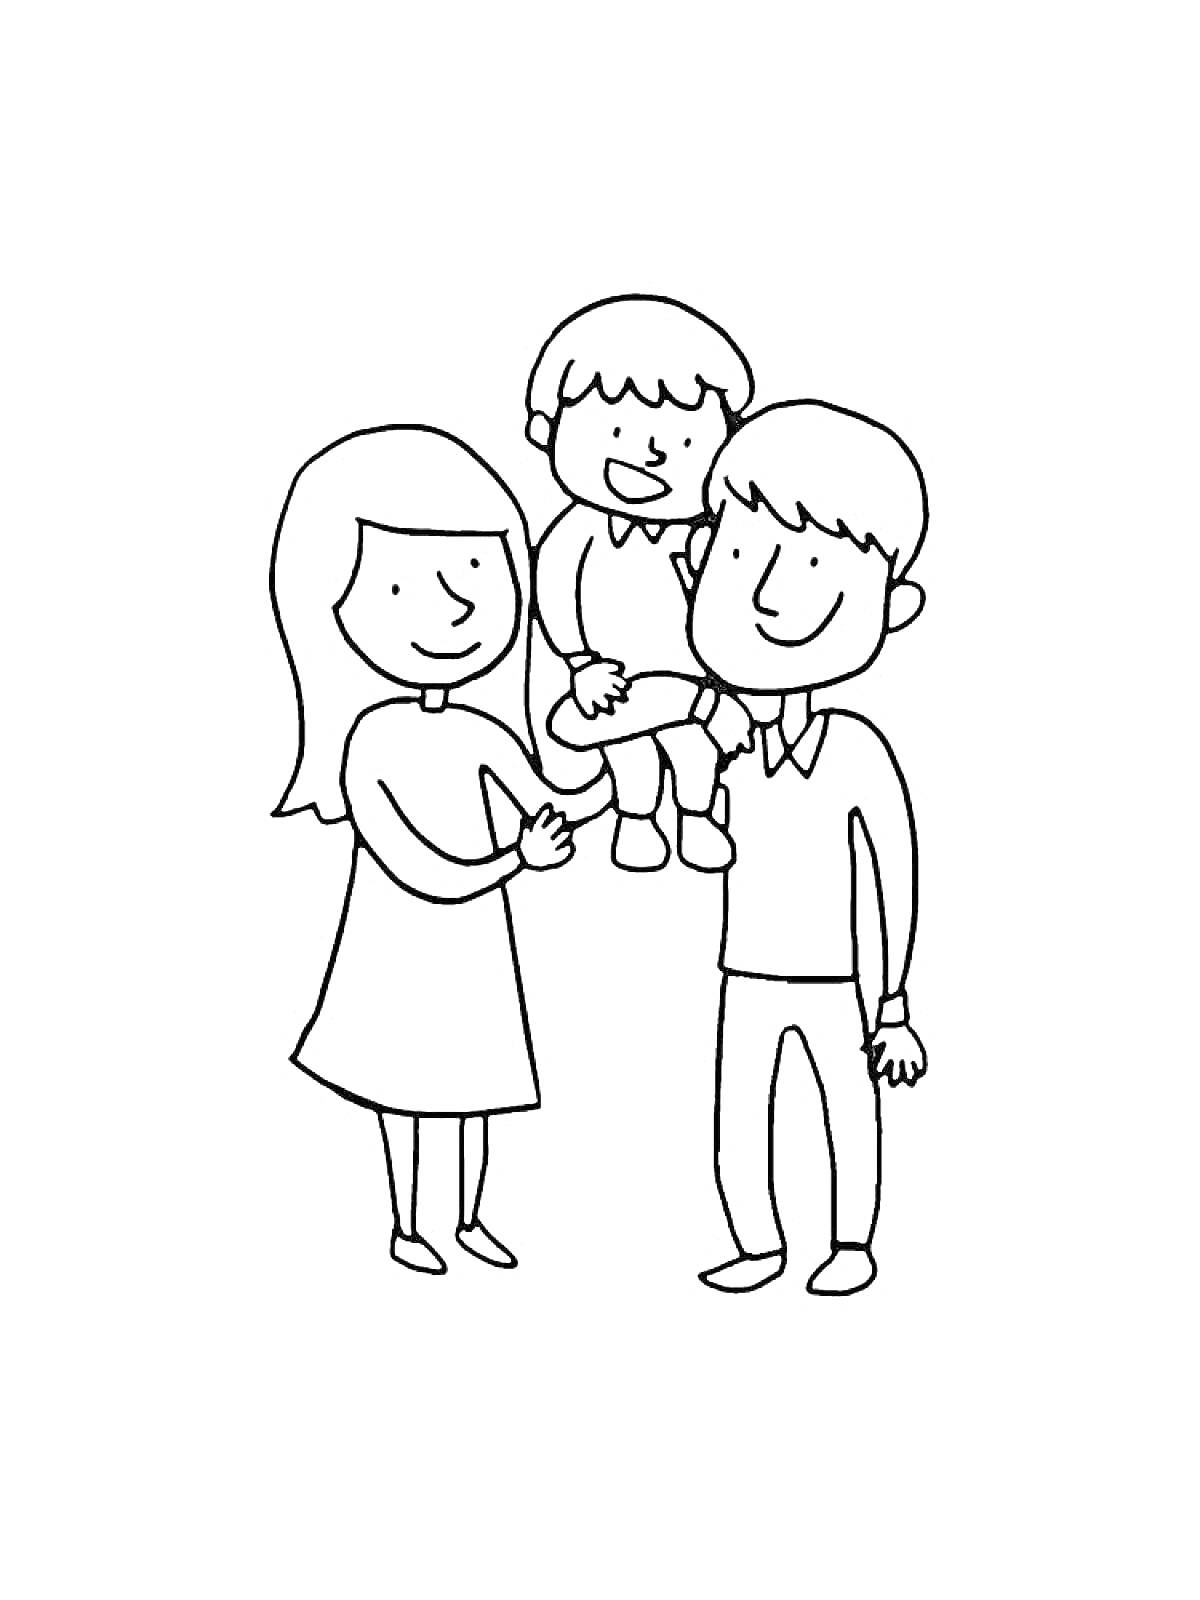 Семья с ребенком на руках у отца